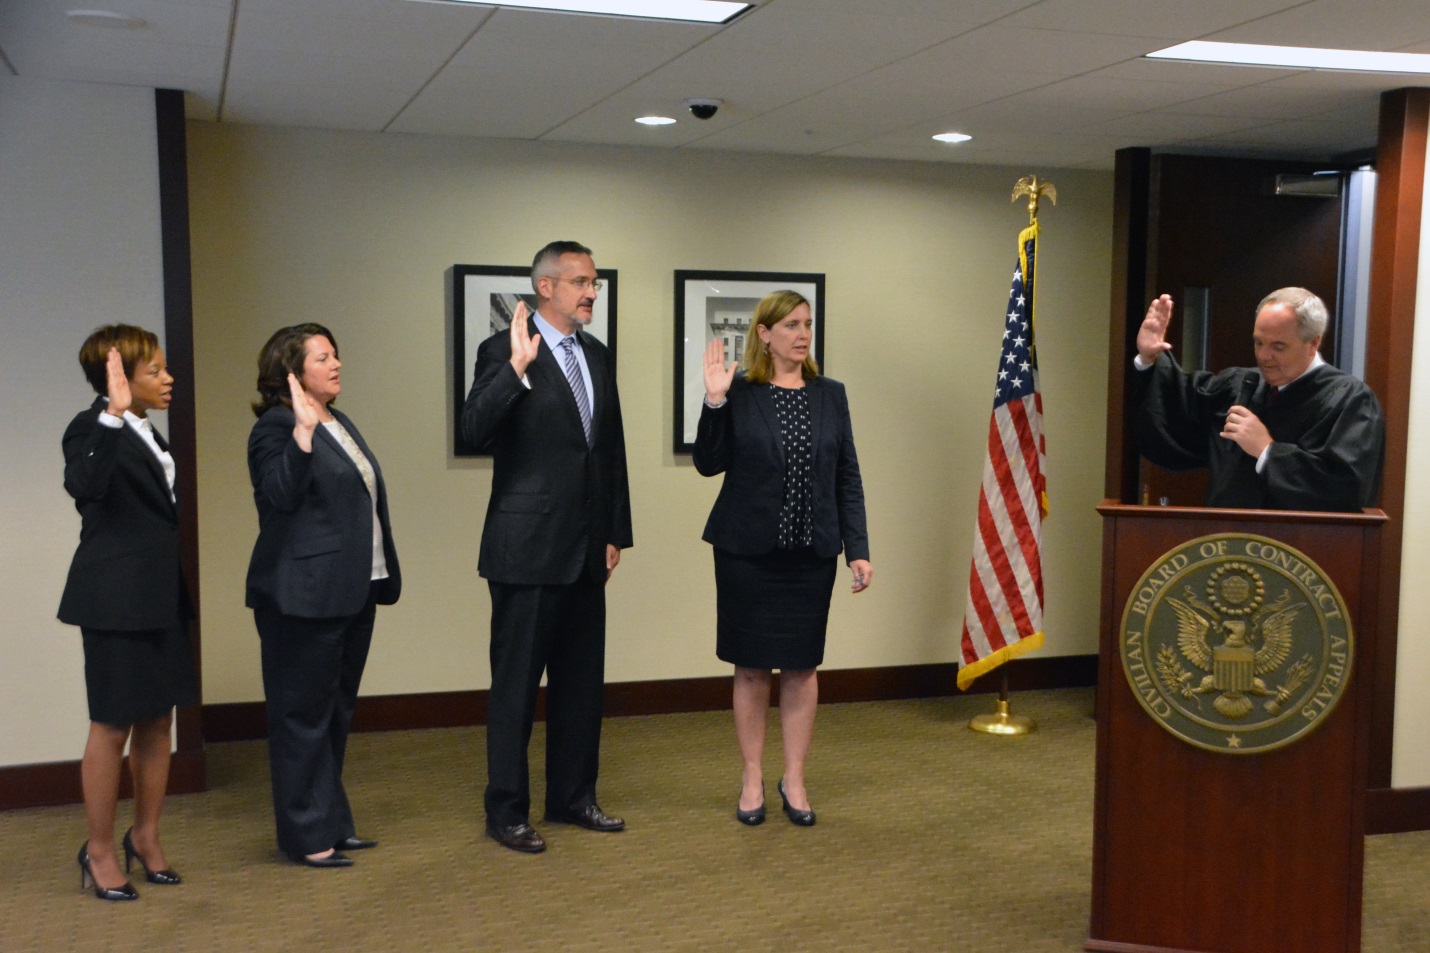 Four New Judges Sworn In